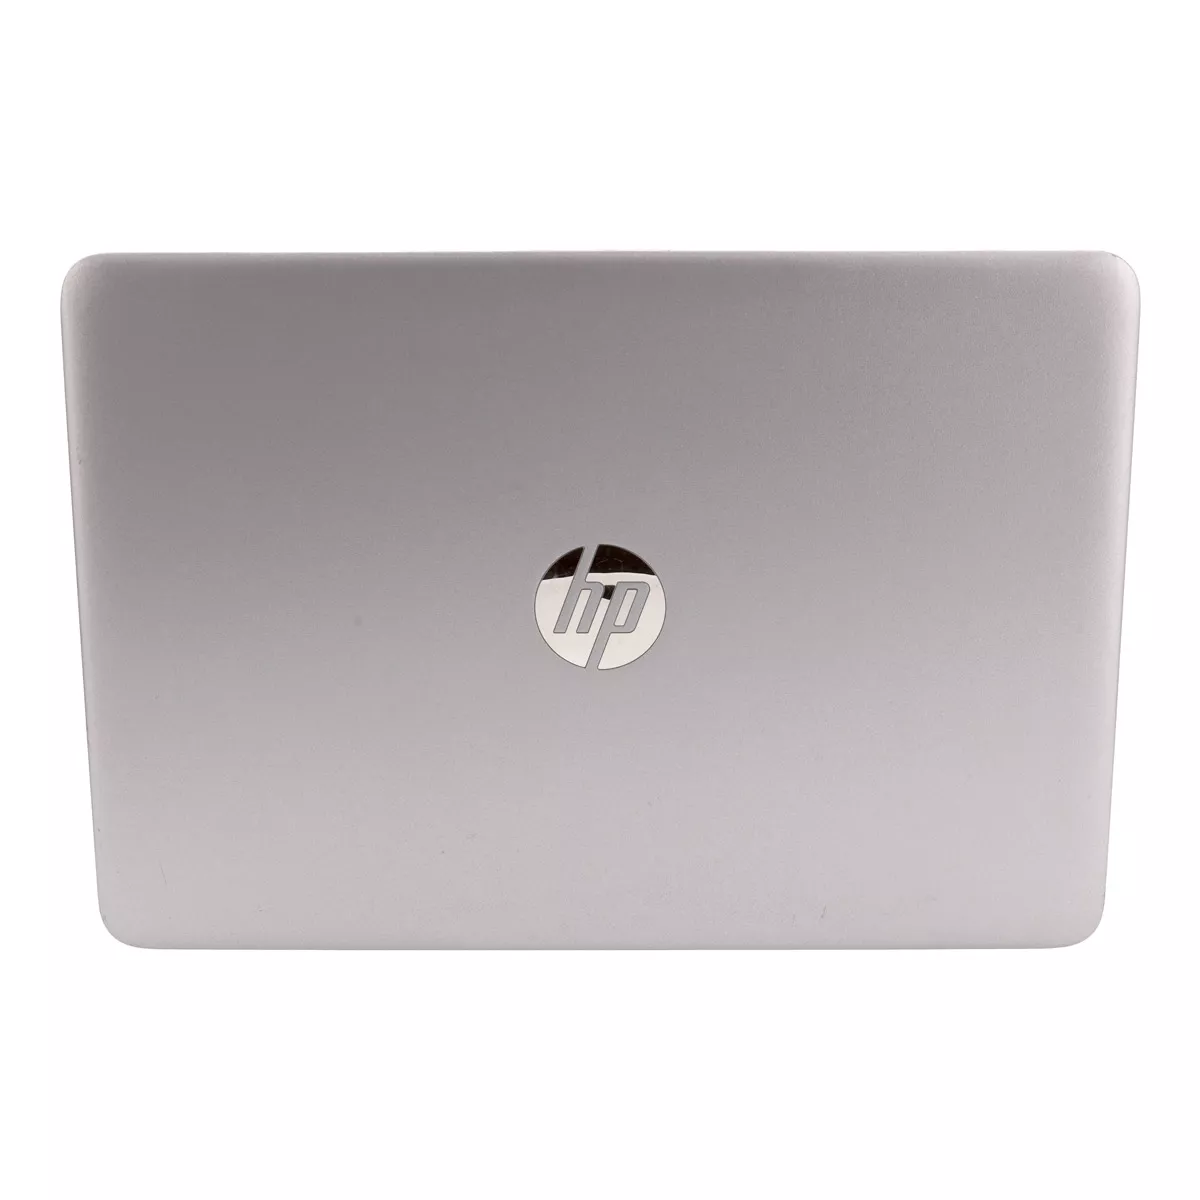 HP EliteBook 840 G4 Core i5 7300U Full-HD 500 GB M.2 SSD Webcam A+